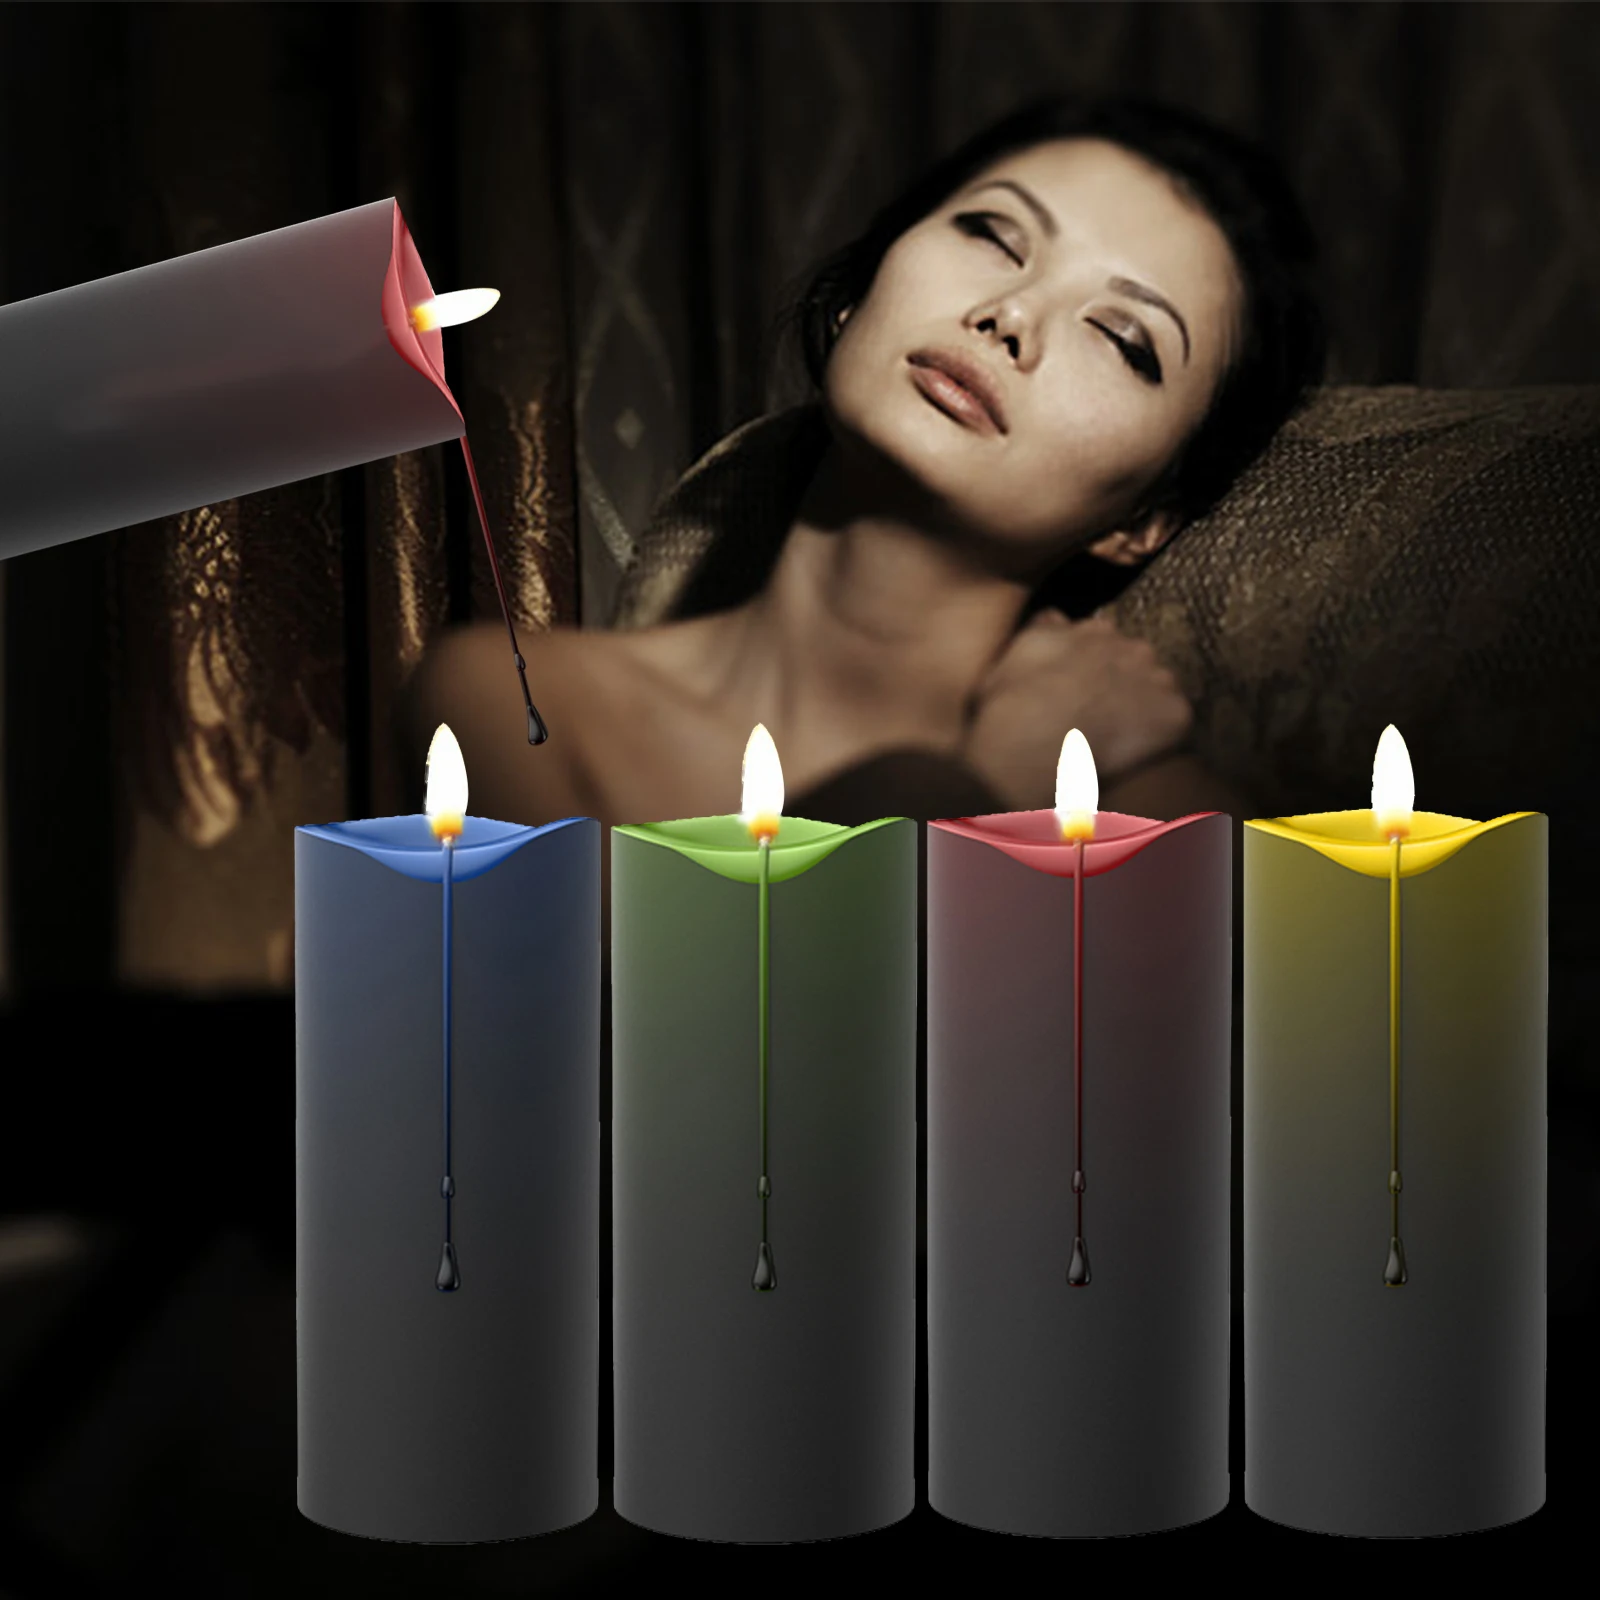 Tanie Niskotemperaturowe świece sadomasochizm akcesoria Bondage seks erotyczny zabawki niska ciepła kapanie świeca sklep